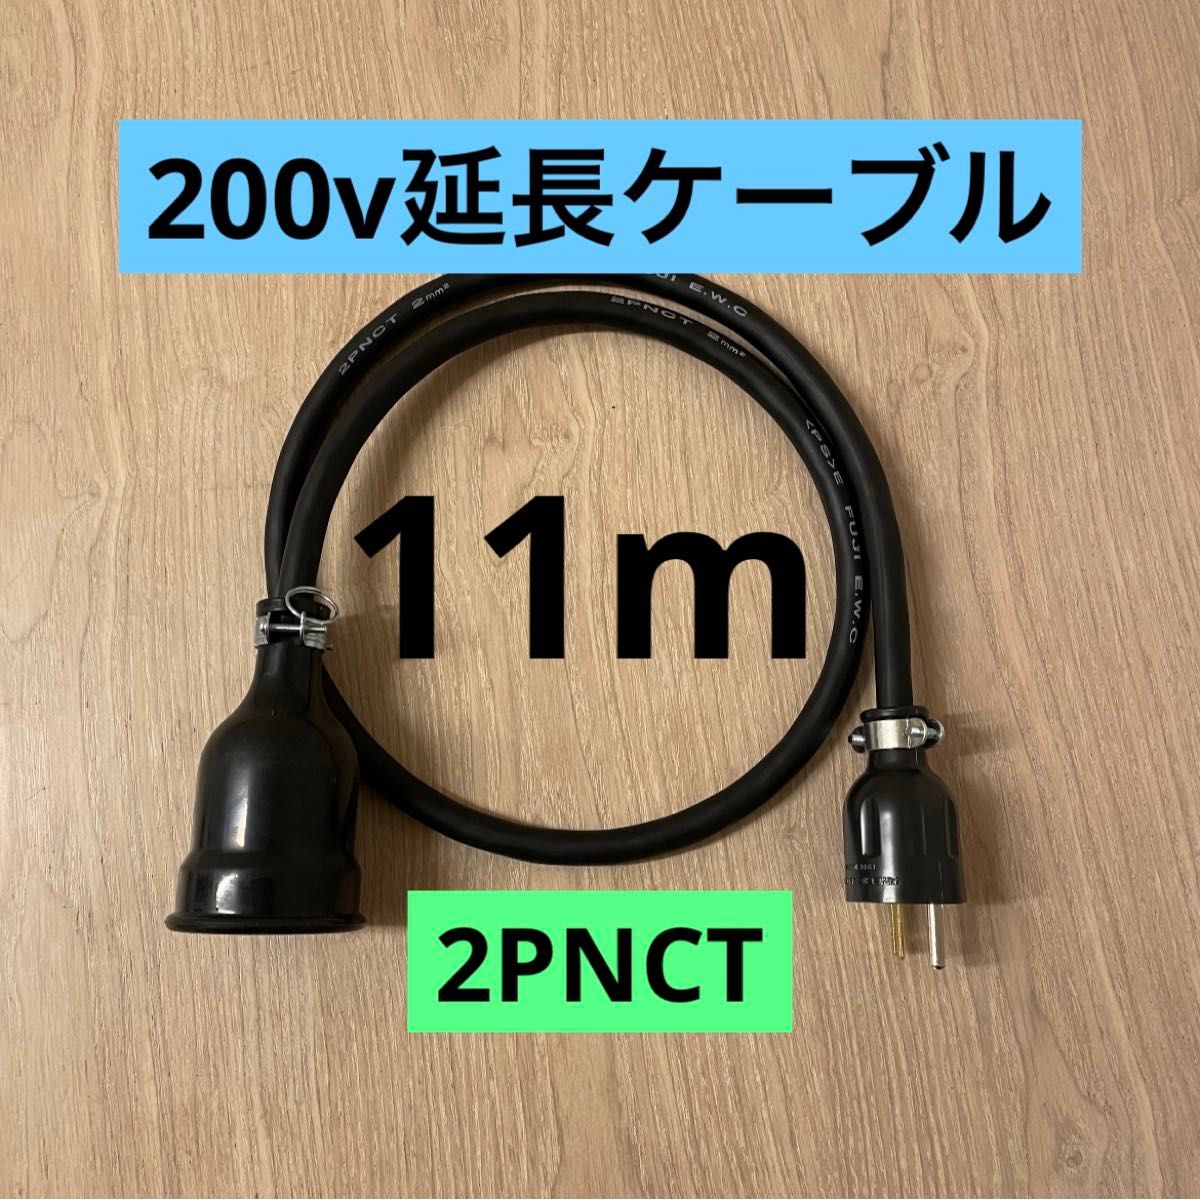 ★ 電気自動車コンセント★ 200V 充電器延長ケーブル11m 2PNCTコード